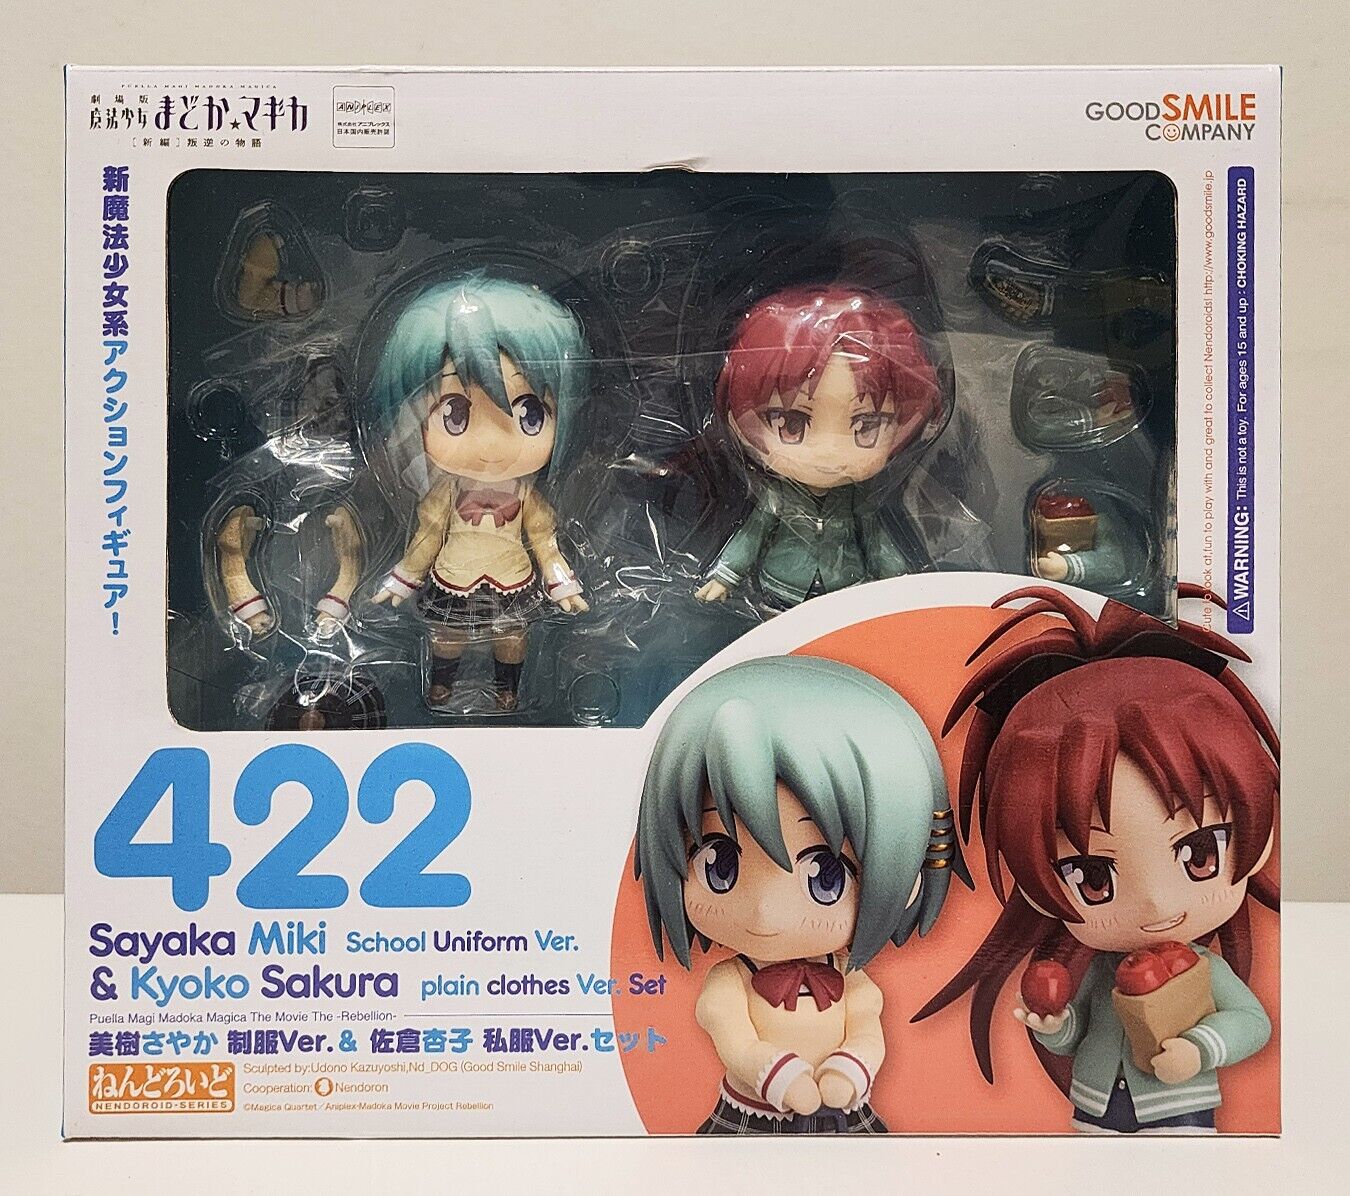 [US Seller] New GSC Nendoroid Set #422 - Sayaka Miki + Kyoko Sakura